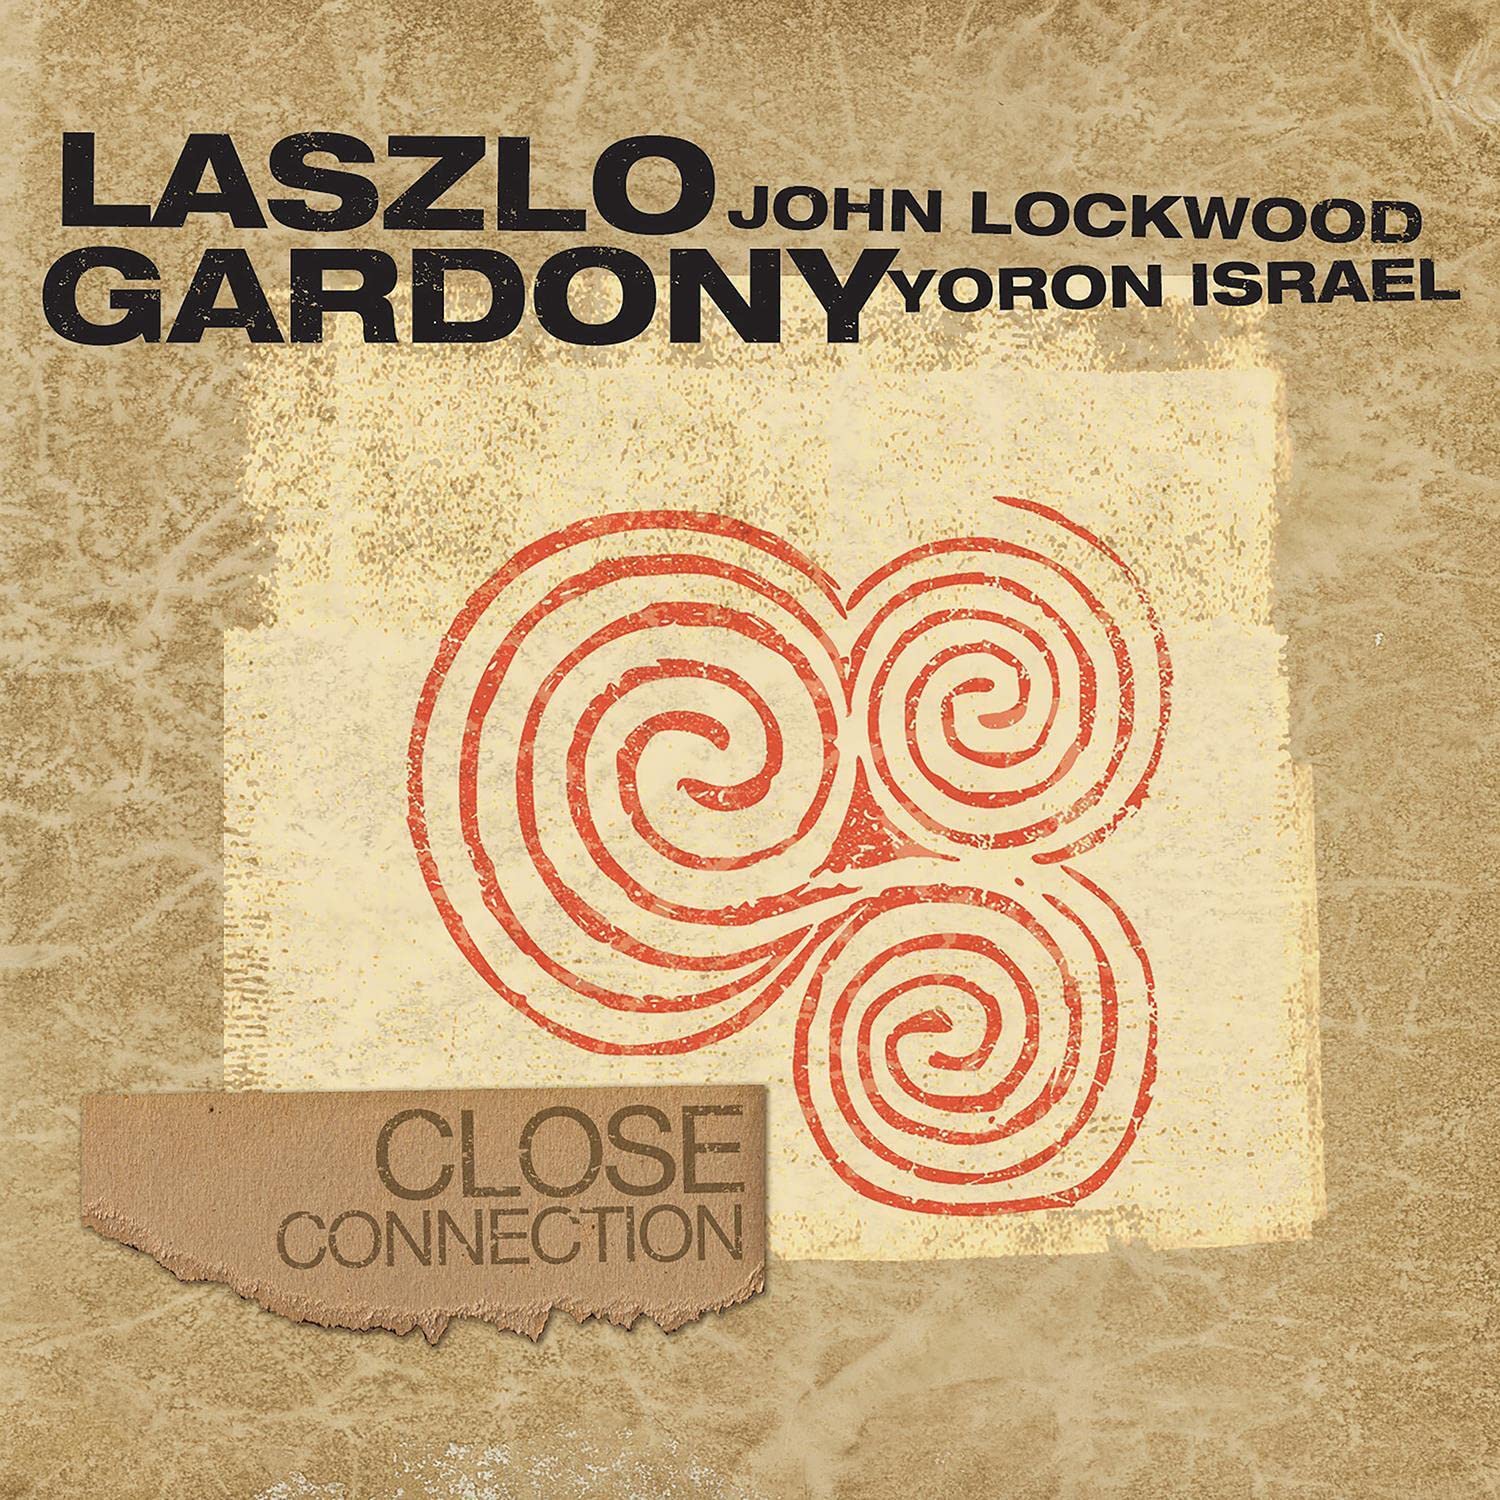 LASZLO GARDONY - Close Connection cover 